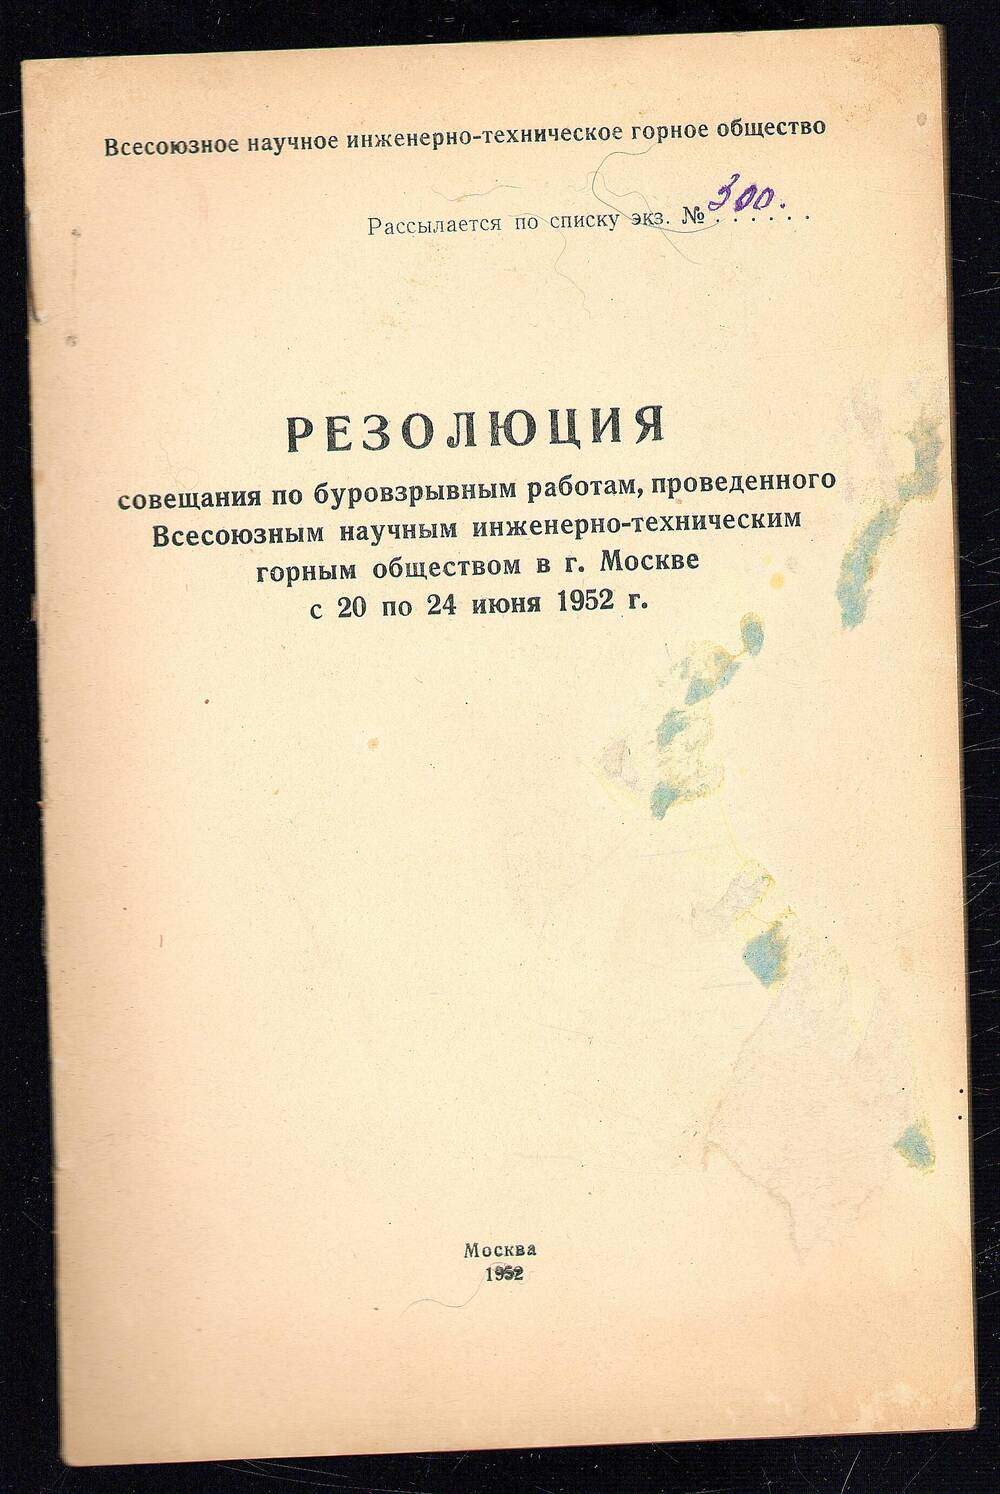 Резолюция совещания по буровзрывным работам  Всесоюзного научно-технического горного общества. Г. Москва, 20-24 июня 1952 г. 6л.